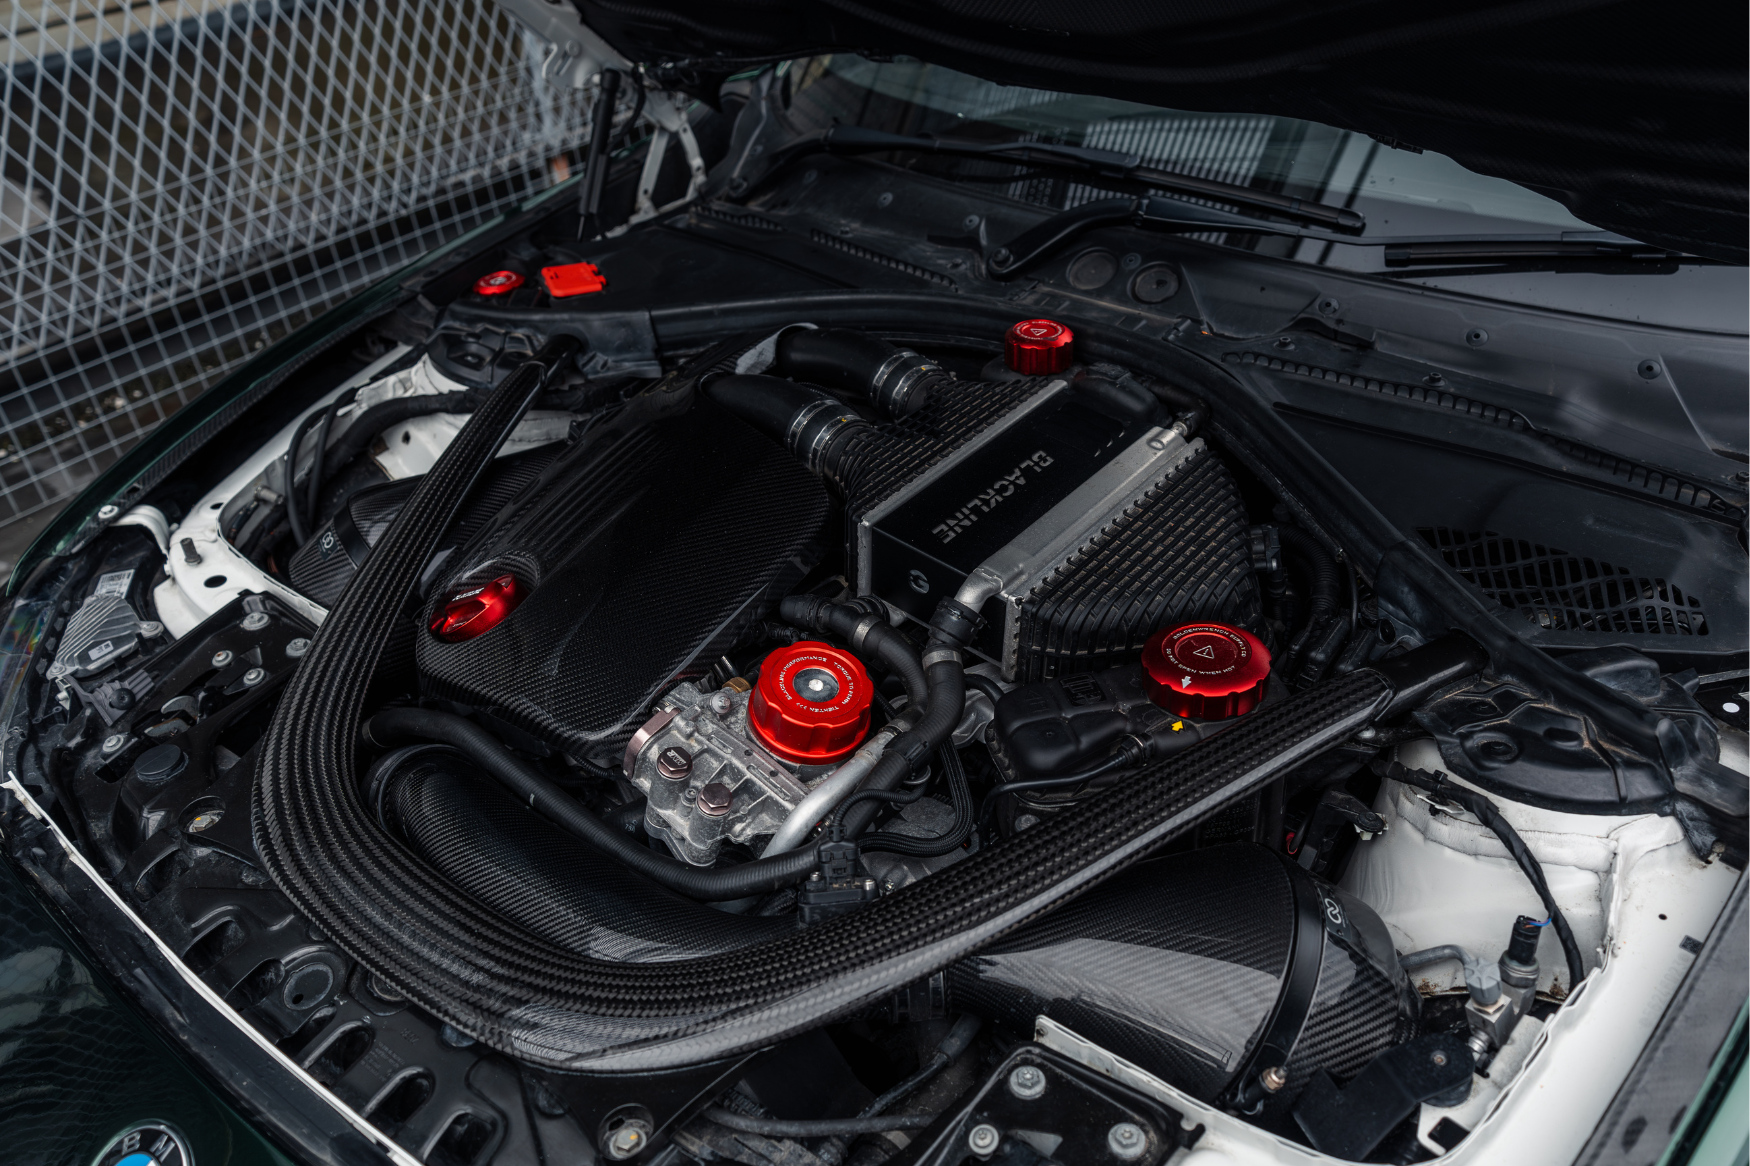 Engine dress up kits - best BMW engine bay mods